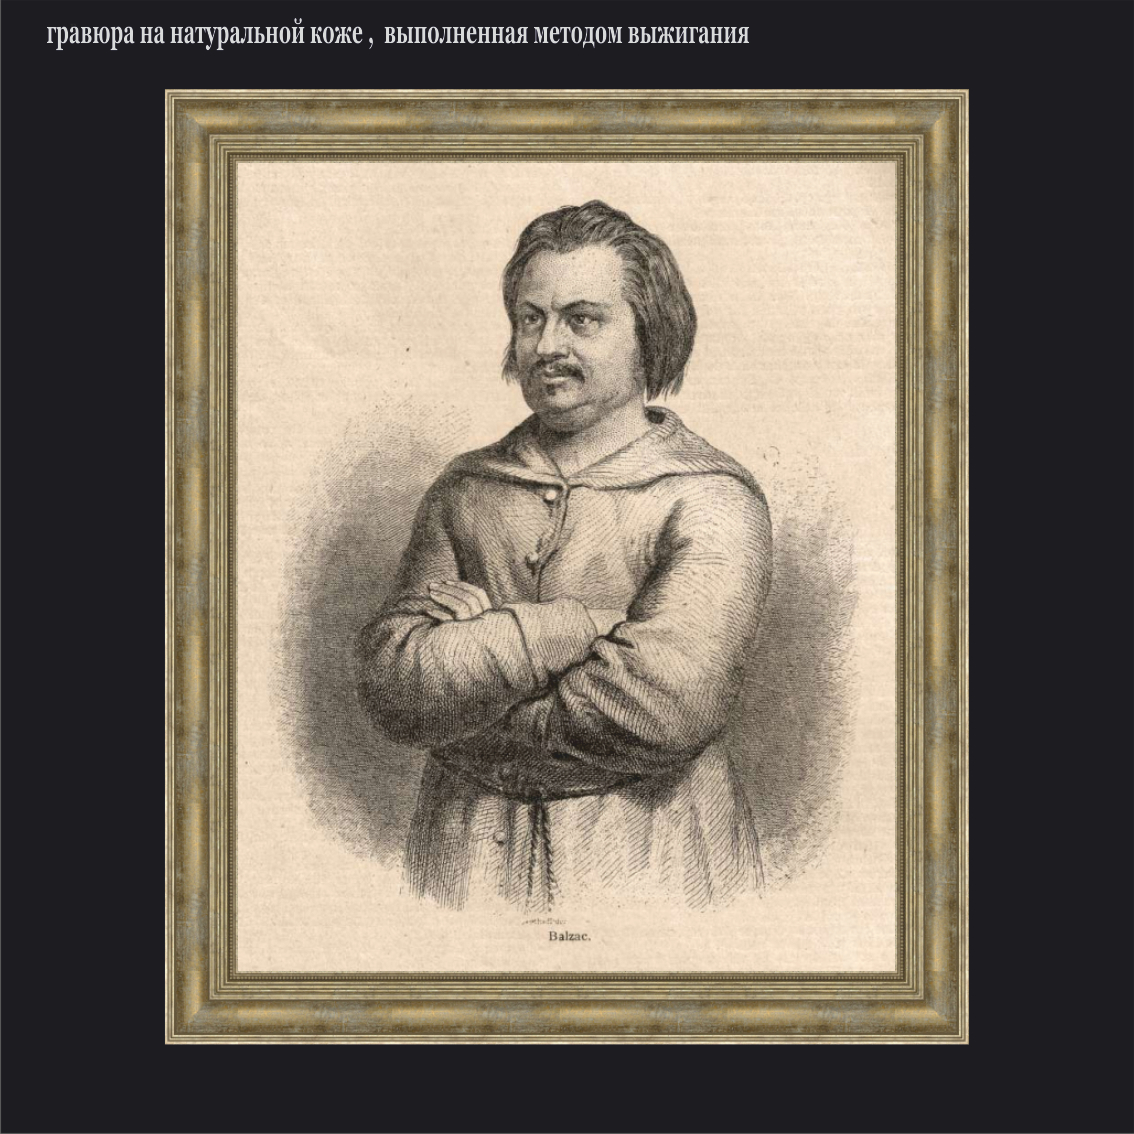 Бальзак мужской портрет